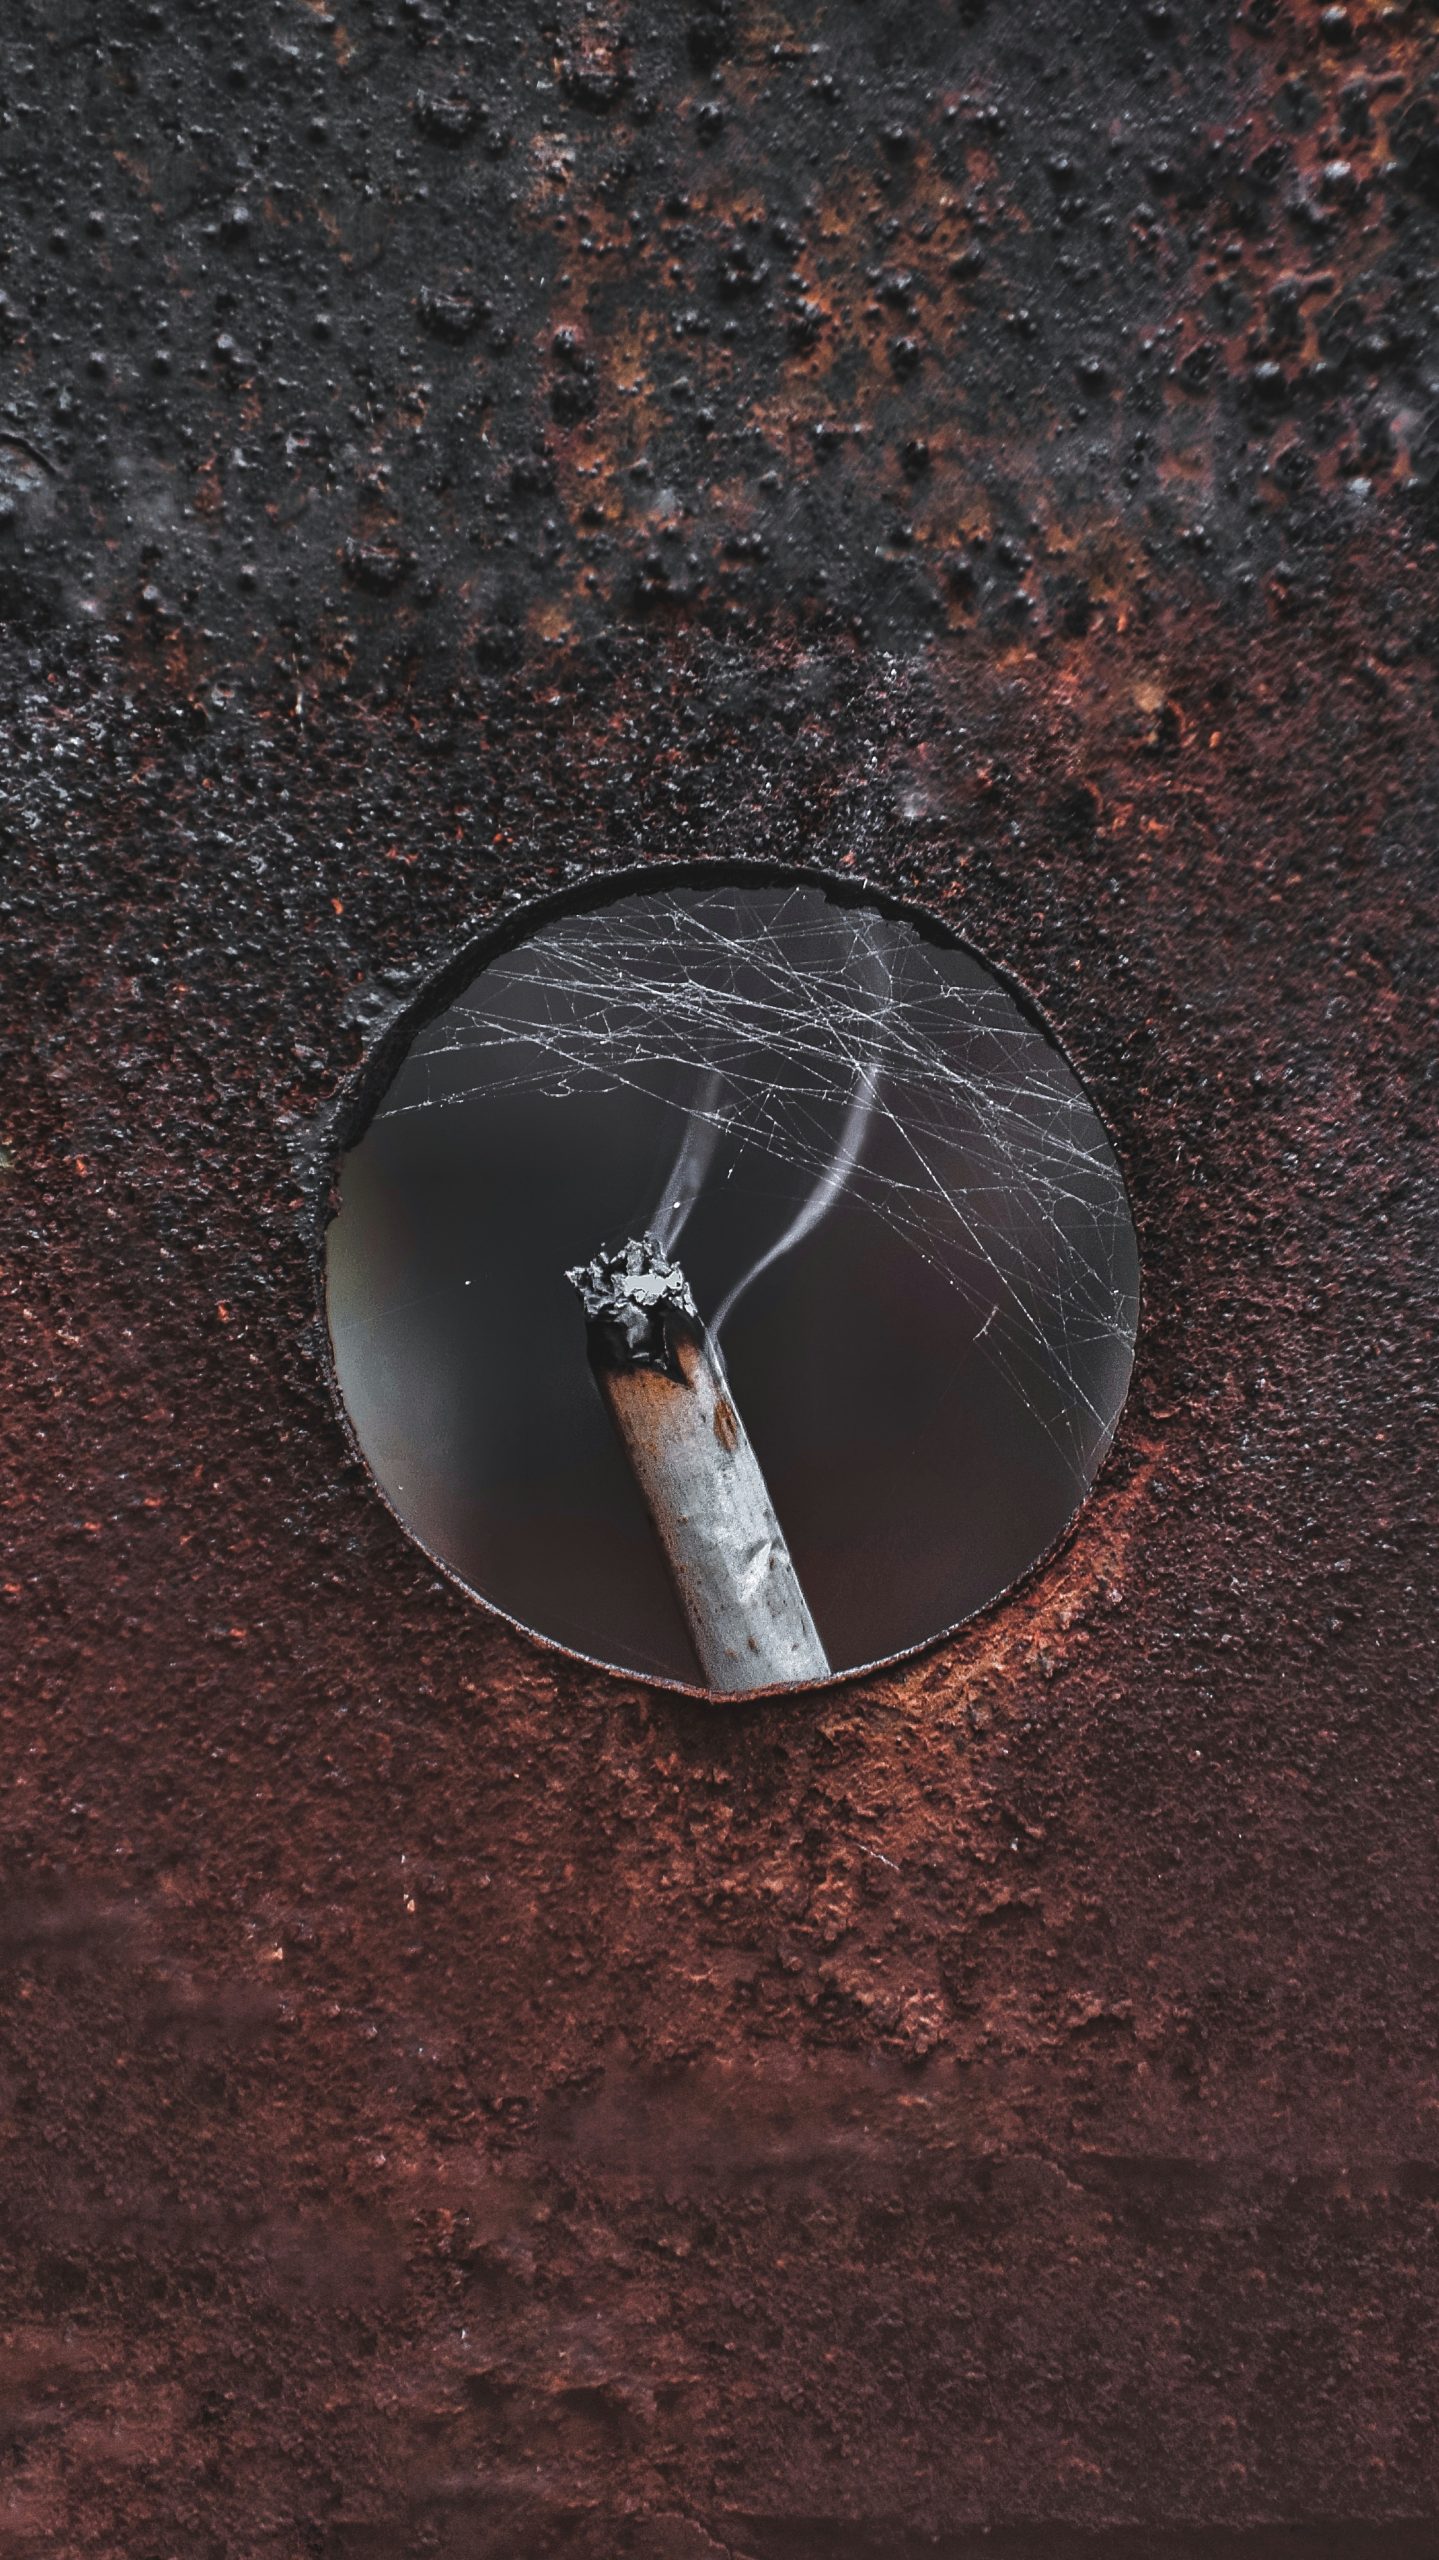 A cigarette bud